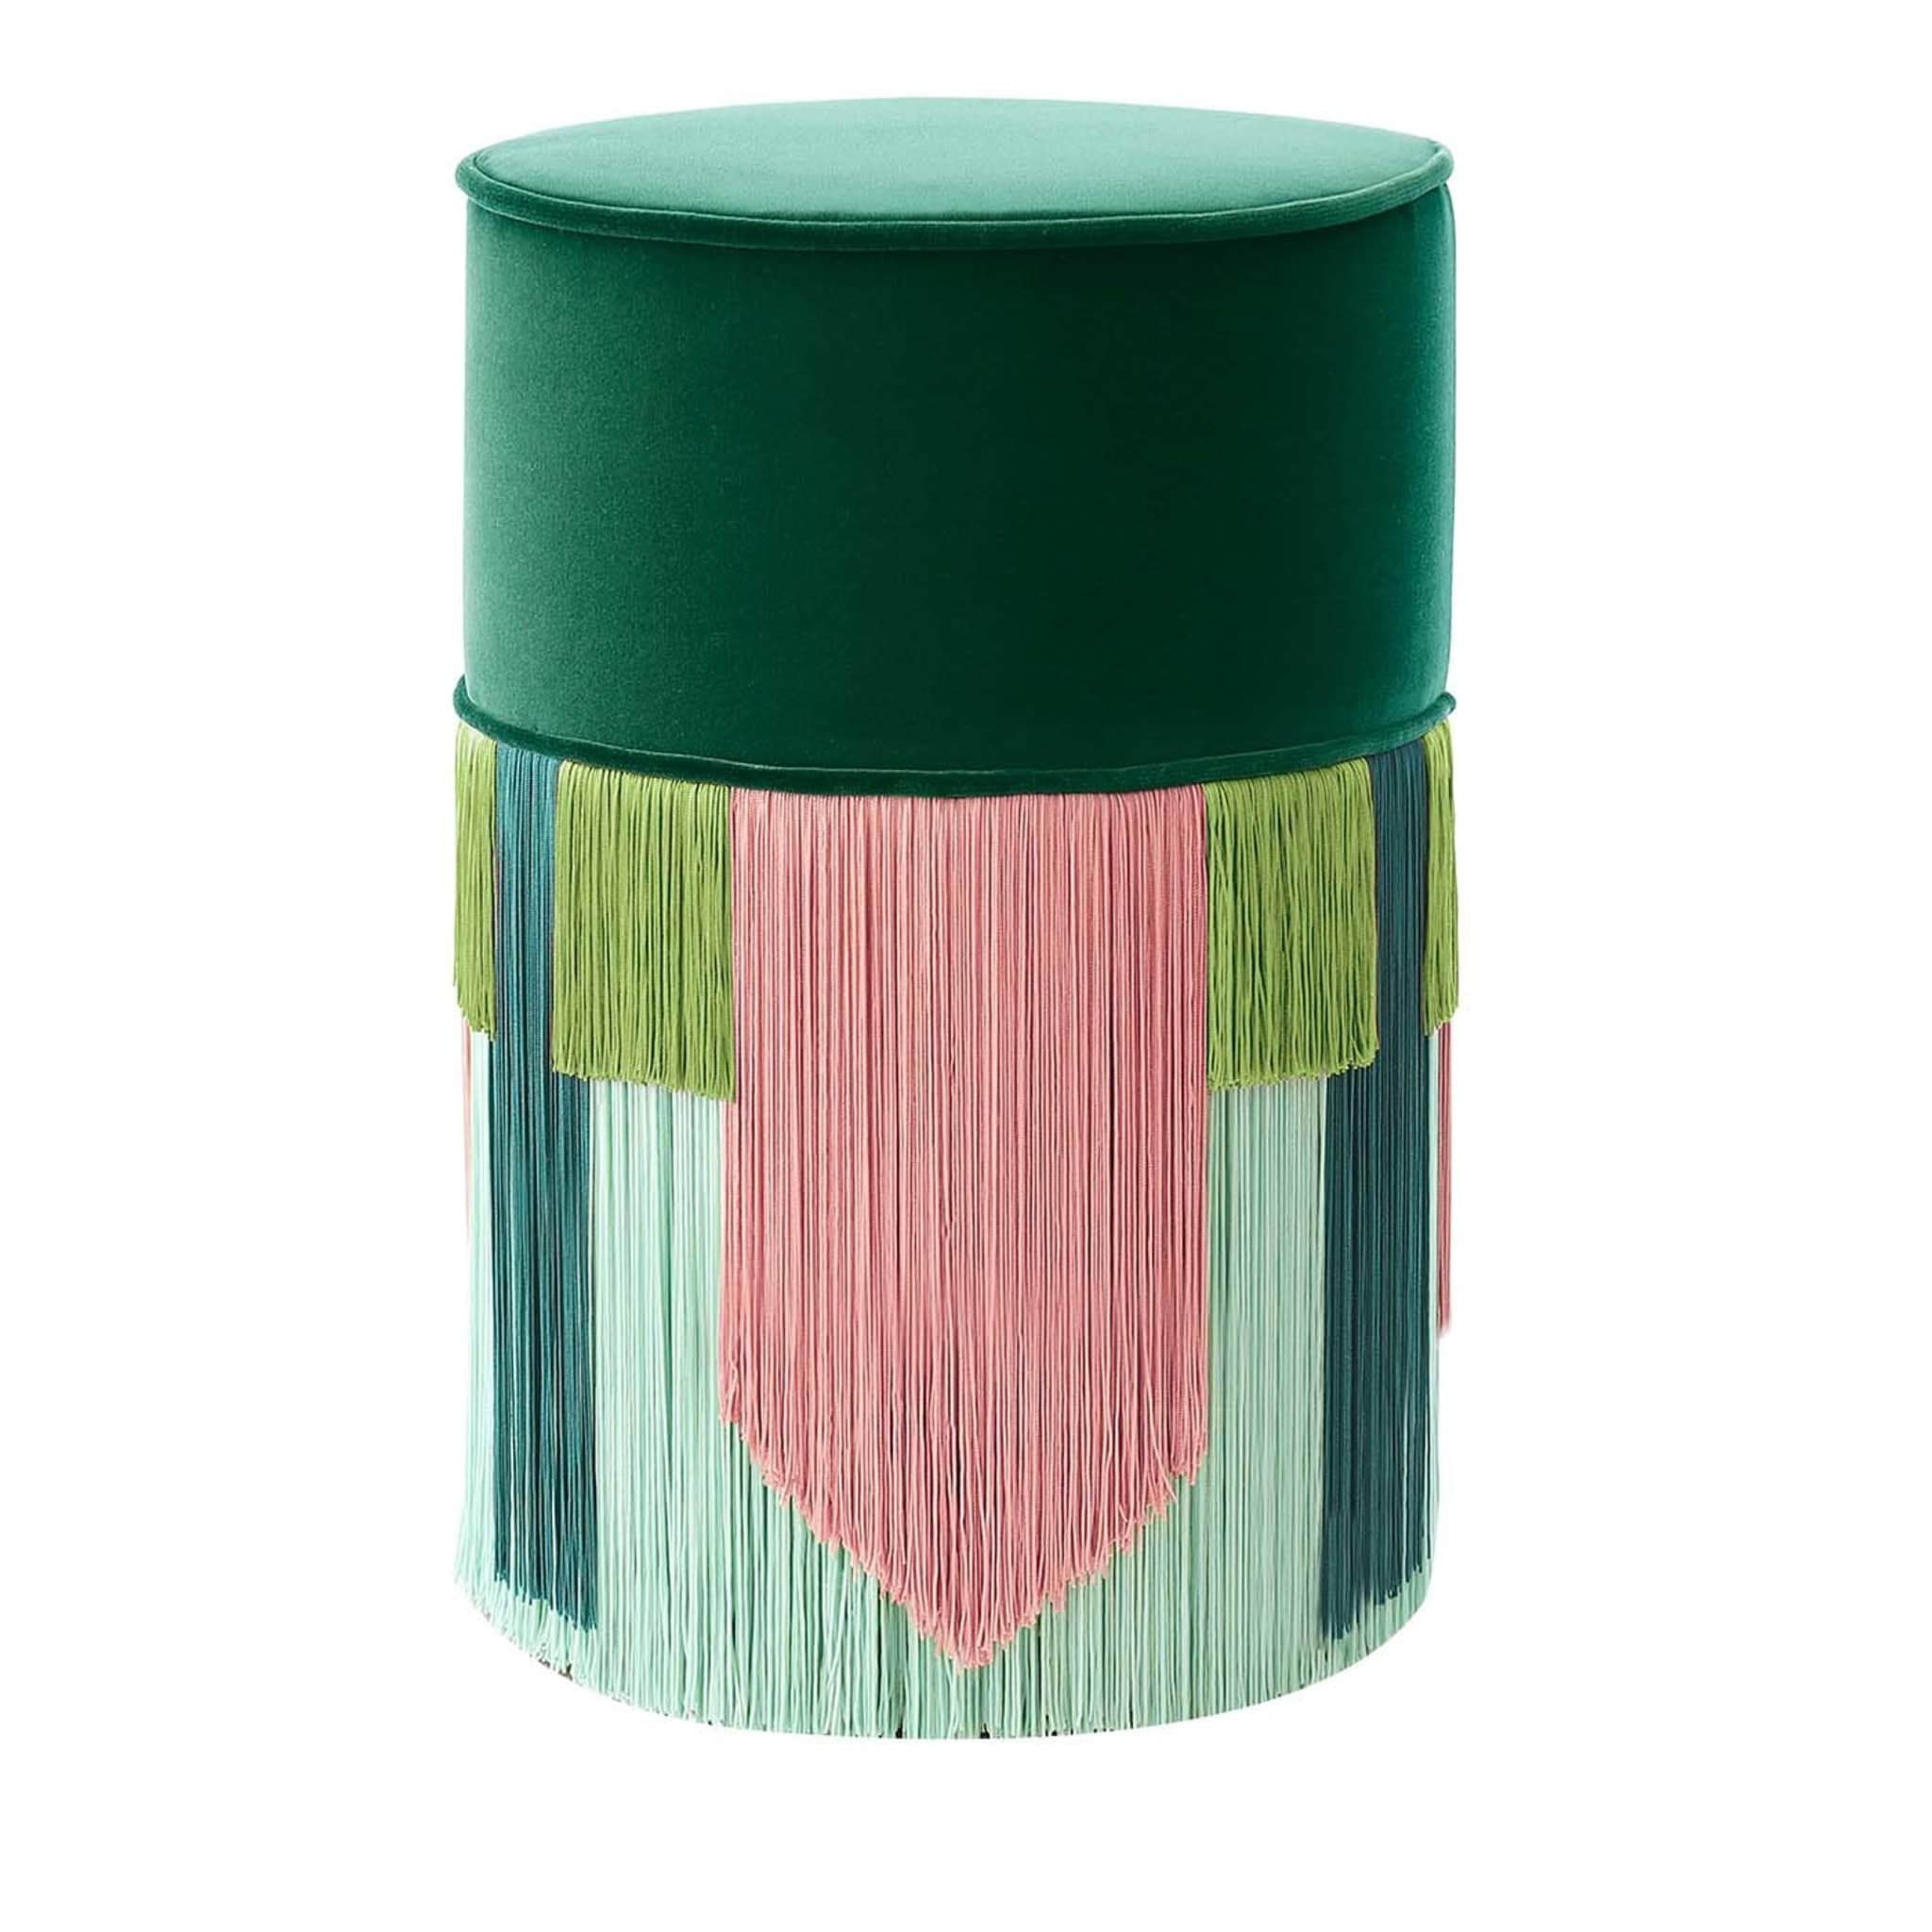 Geometrischer Krawatten-Pouf in Grün und Rosa von Couture - Hauptansicht